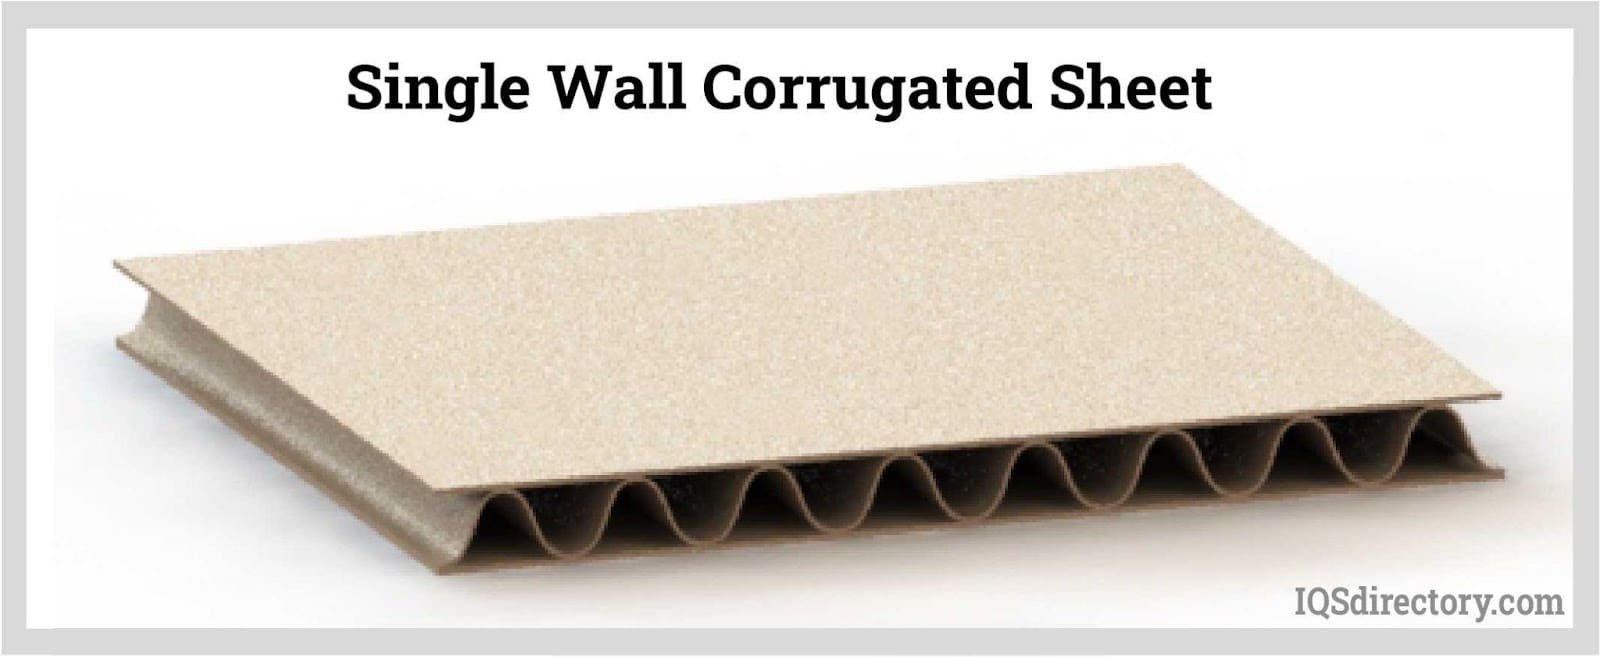 Single Wall Corrugated Sheet